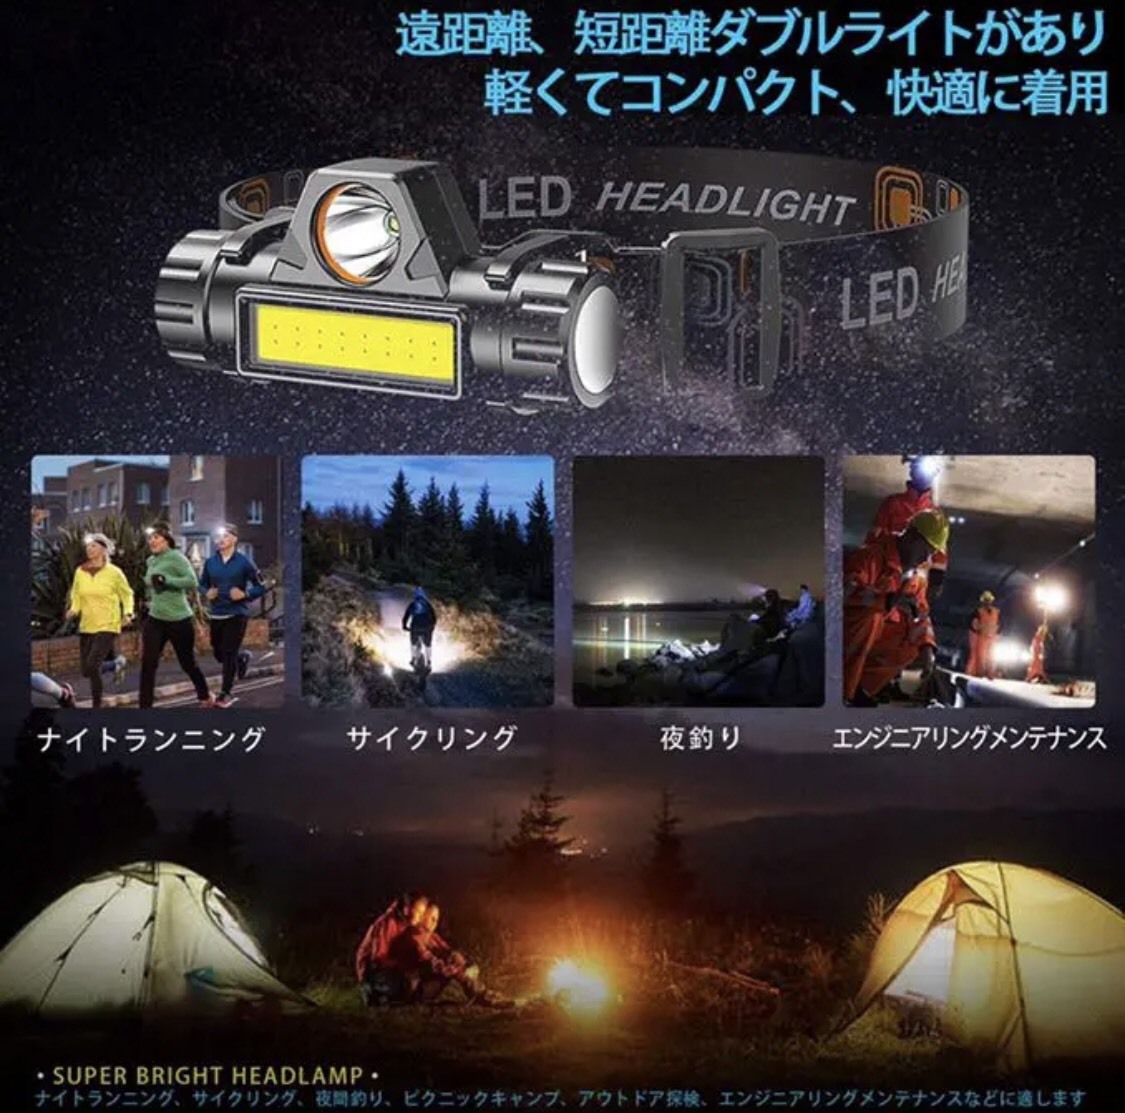 LEDヘッドライト 最安 充電式 ギフト キャンプ 夜釣り 登山 おすすめの画像3